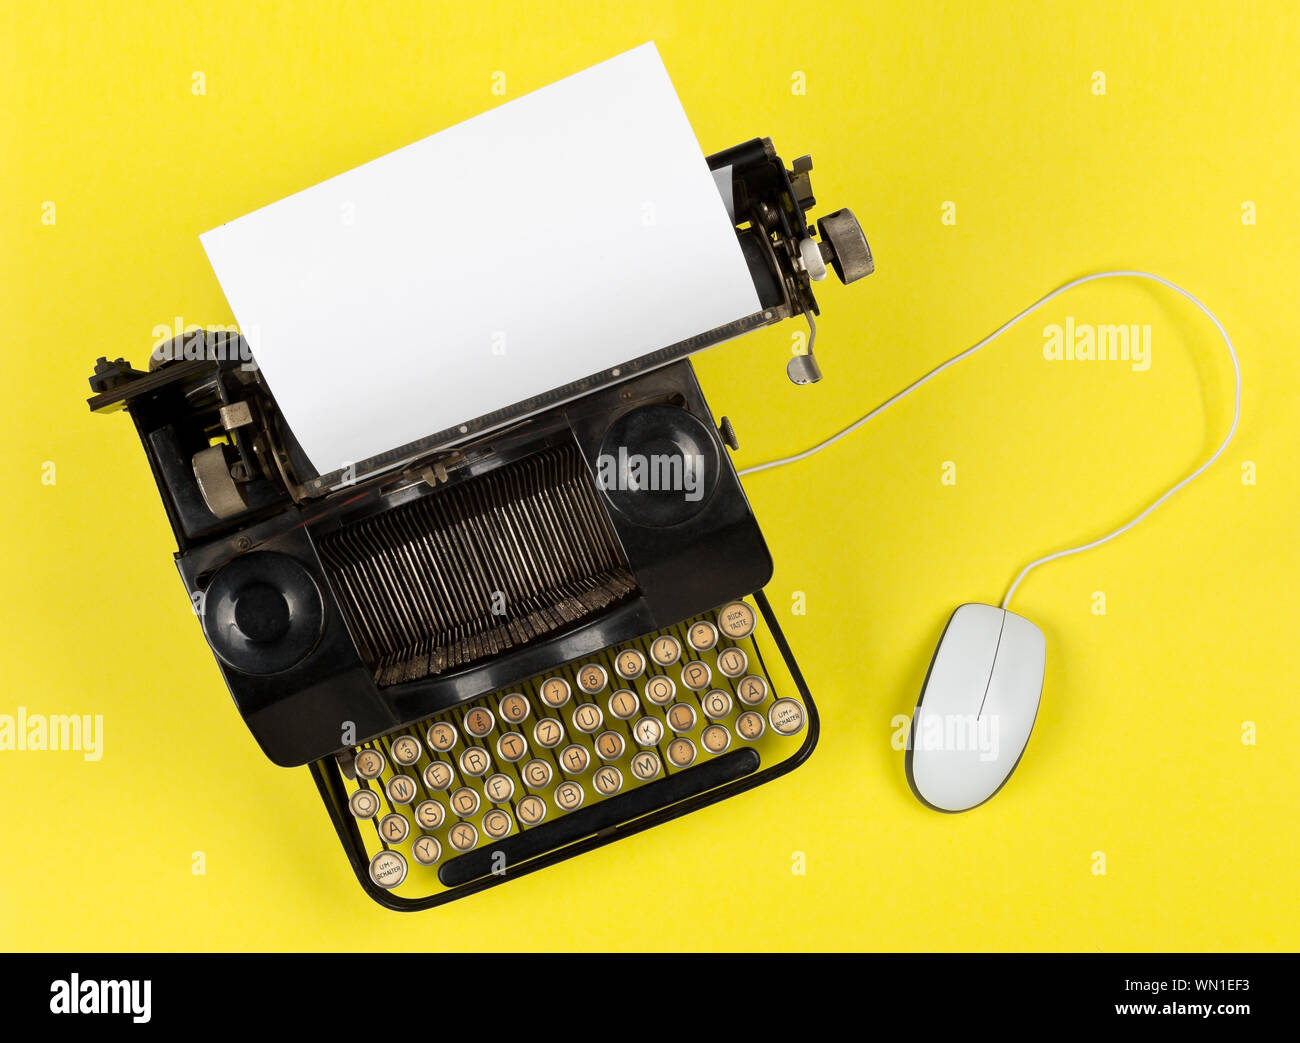 Antike retro Mechanische Schreibmaschine mit modernen Computer Maus auf gelben Hintergrund - die Digitalisierung, Digitalisierung und Modernisierung minimal con Stockfoto